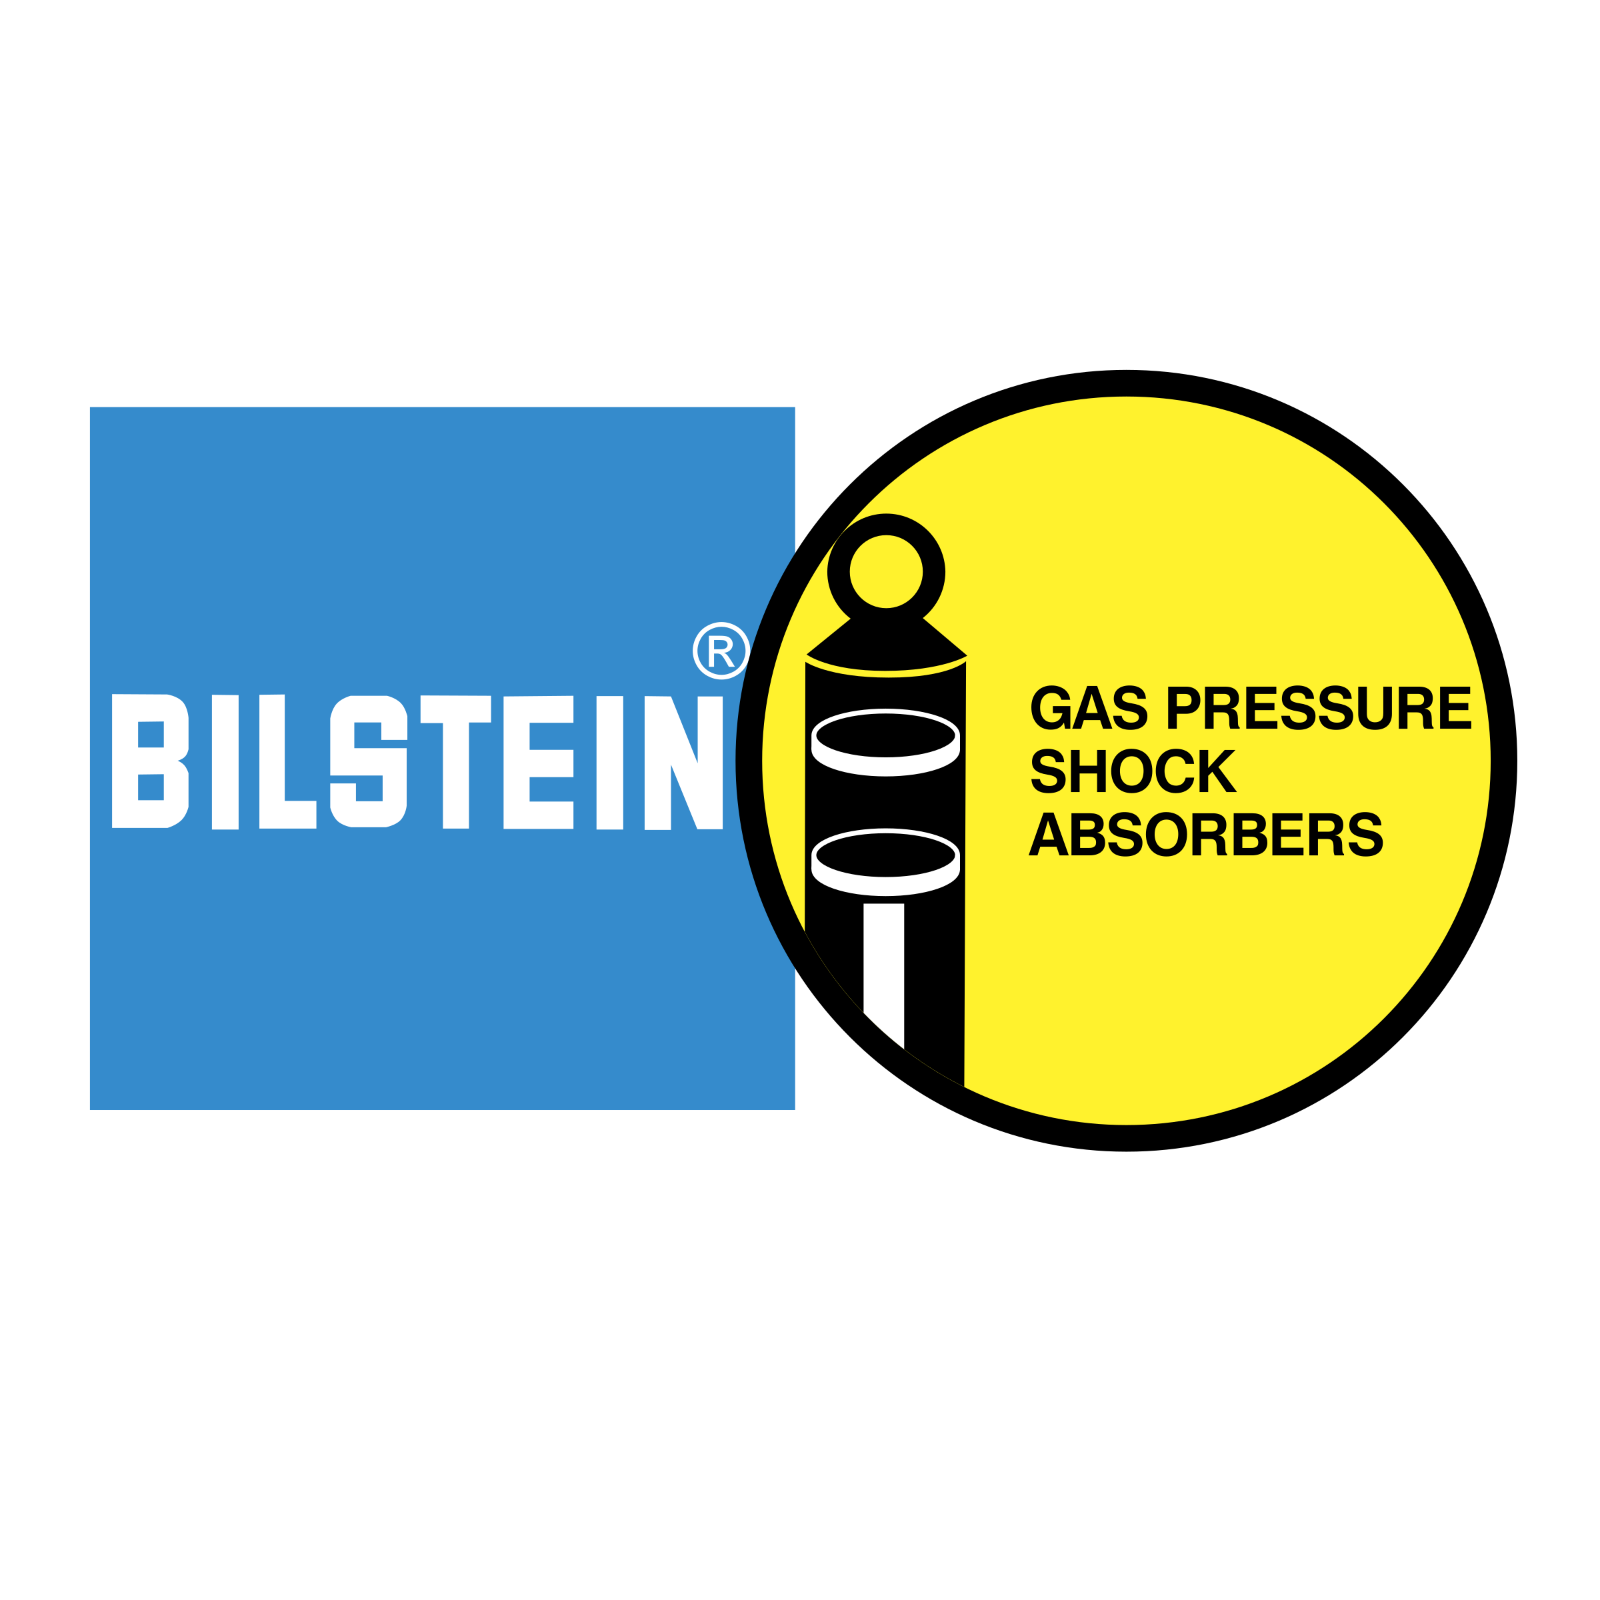 Bilstein 1 logo png transparent